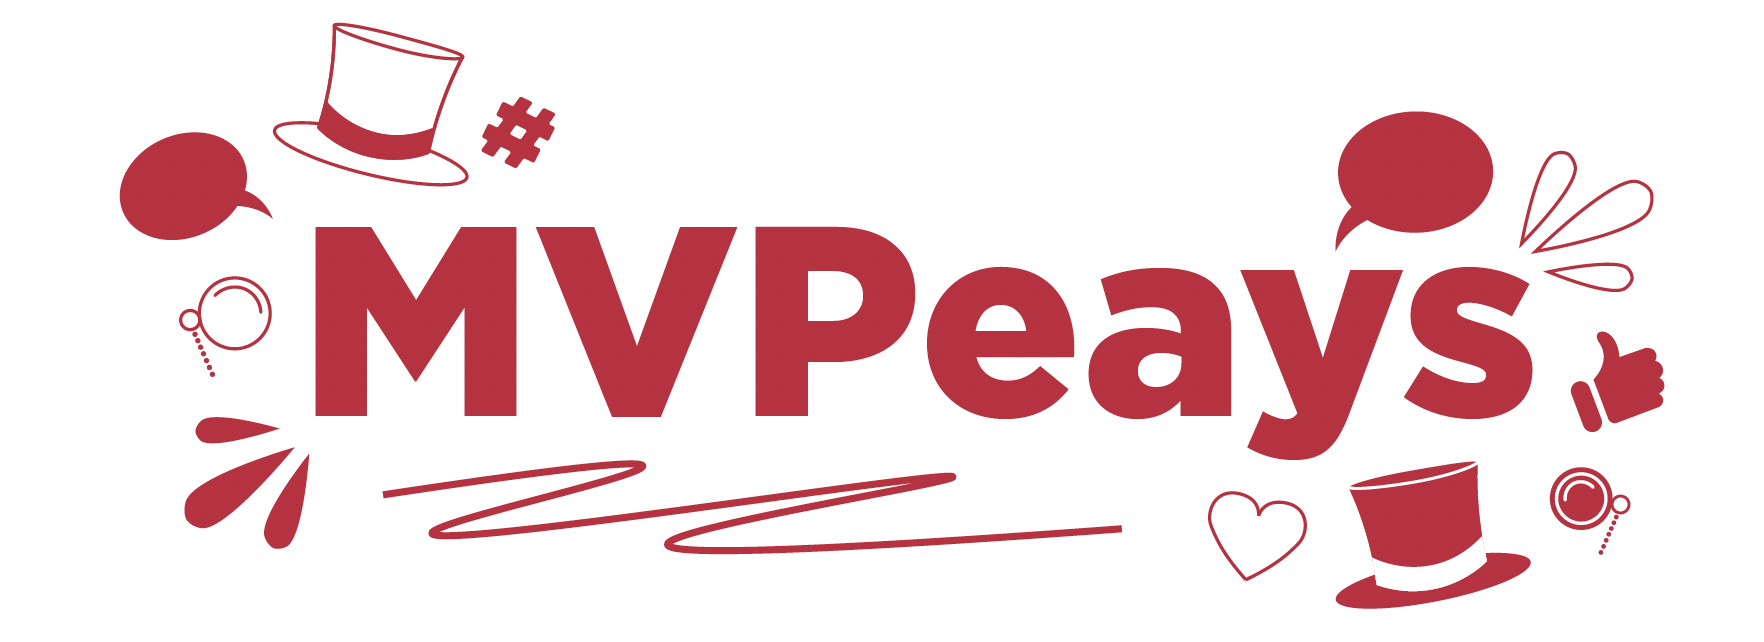 MVPeays logo